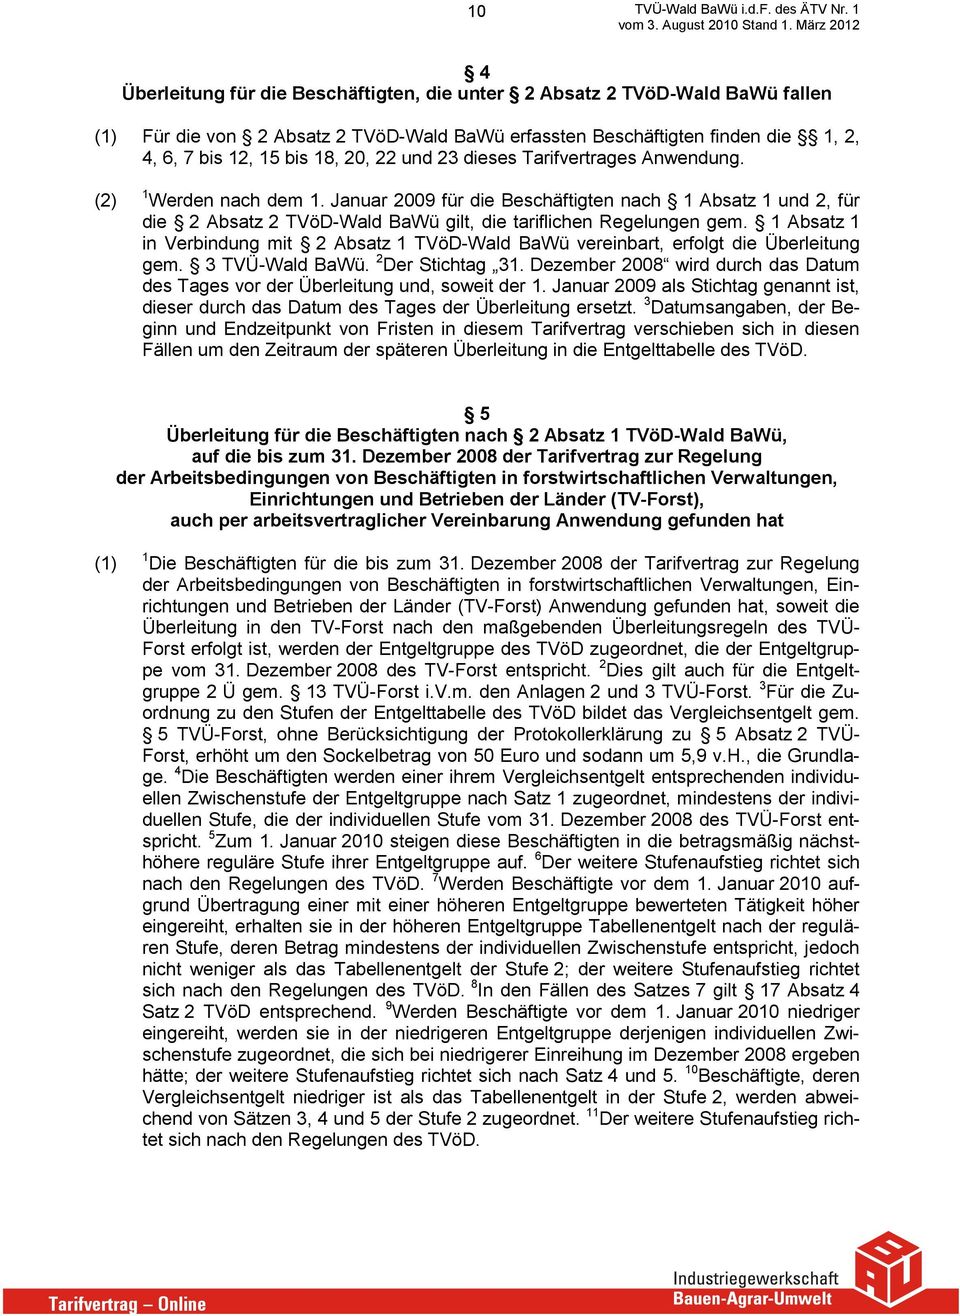 1 Absatz 1 in Verbindung mit 2 Absatz 1 TVöD-Wald BaWü vereinbart, erfolgt die Überleitung gem. 3 TVÜ-Wald BaWü. 2 Der Stichtag 31.